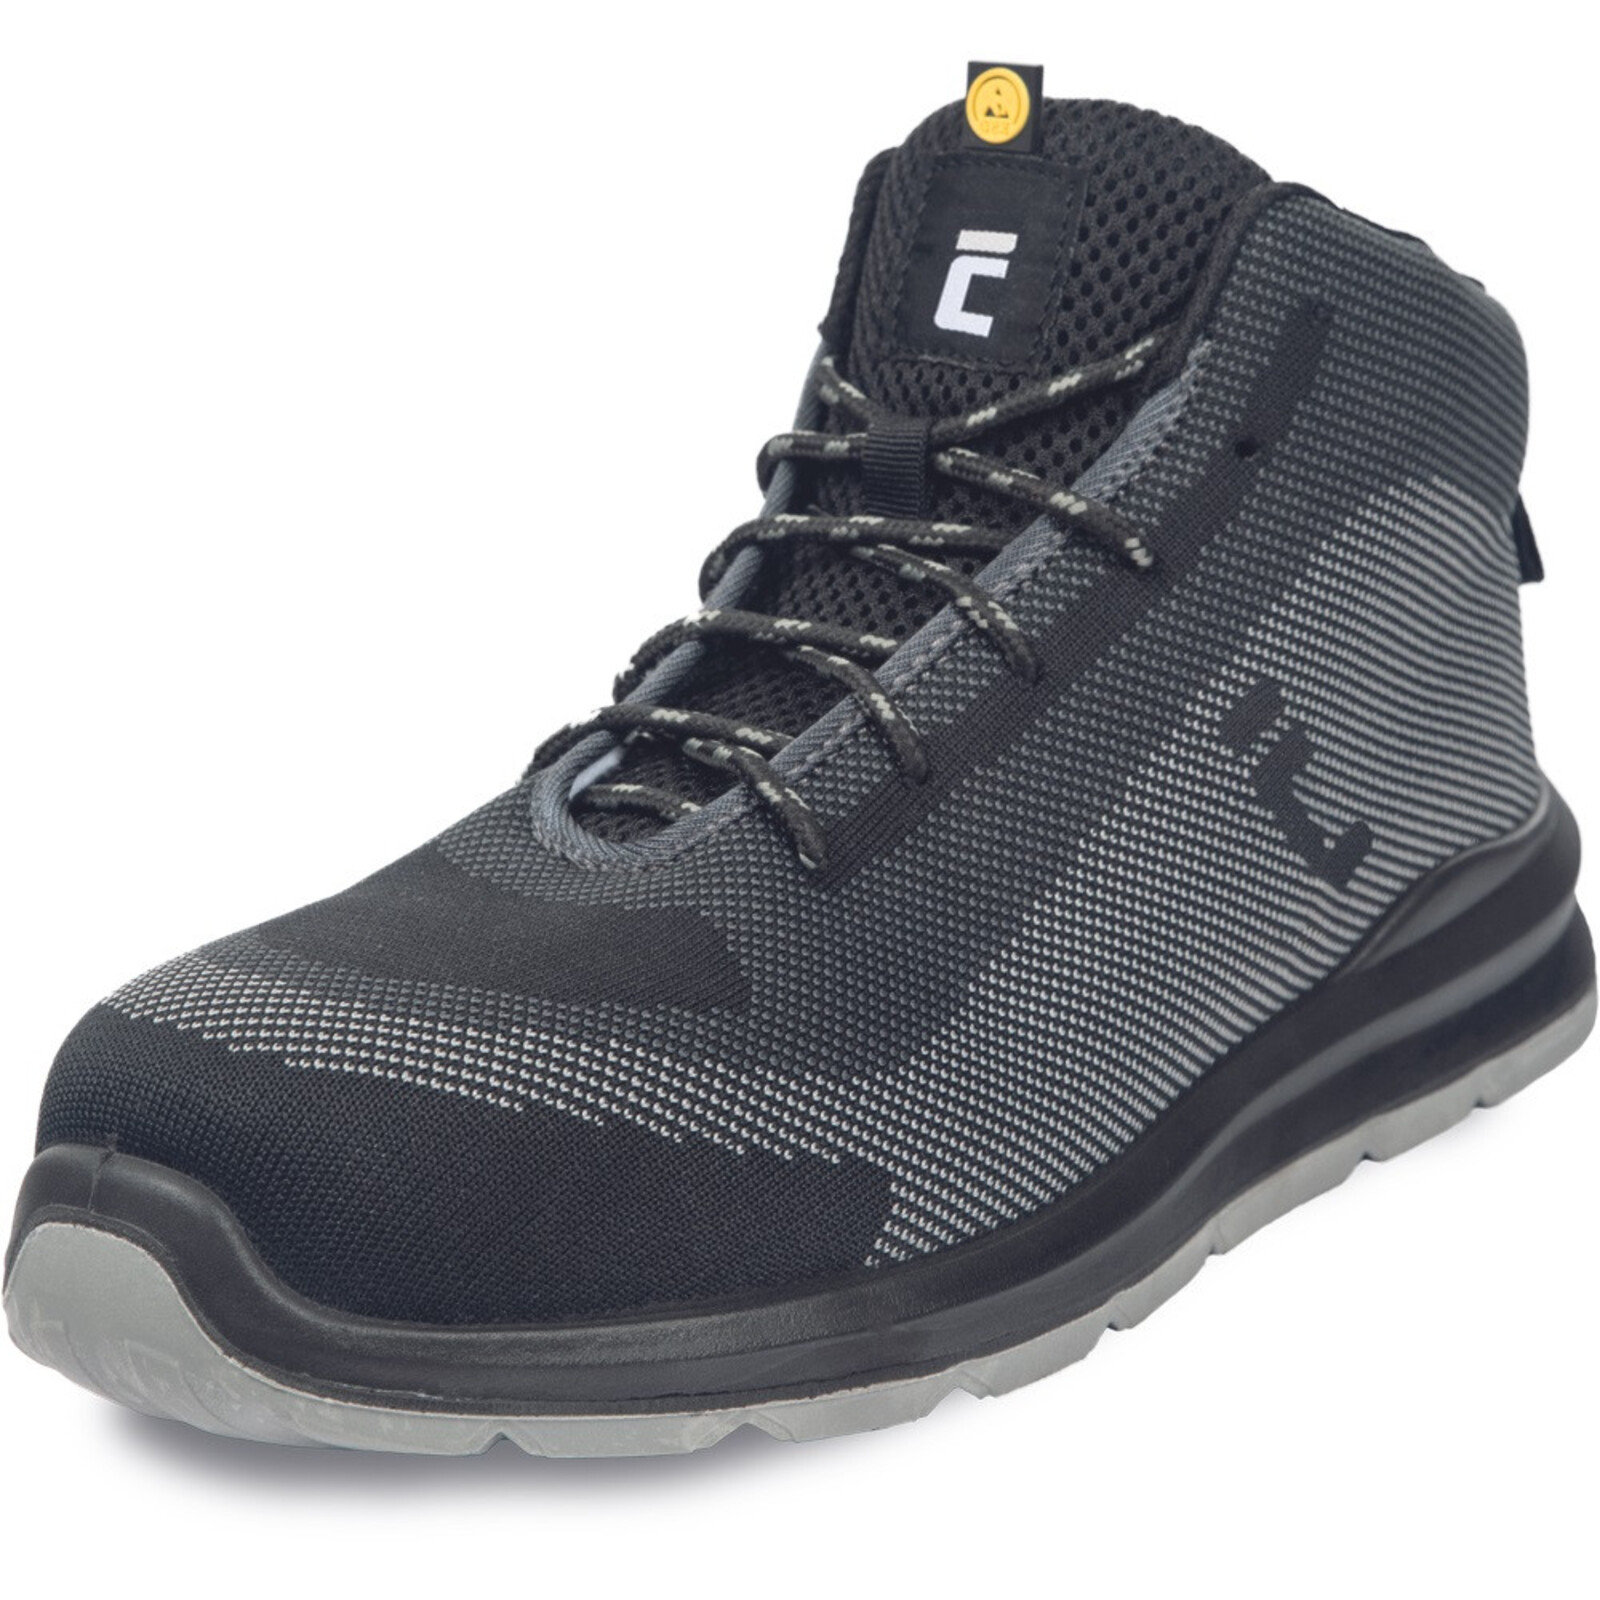 Bezpečnostná členková obuv Cerva Vadorros S1P MF ESD SRC - veľkosť: 39, farba: sivá/čierna